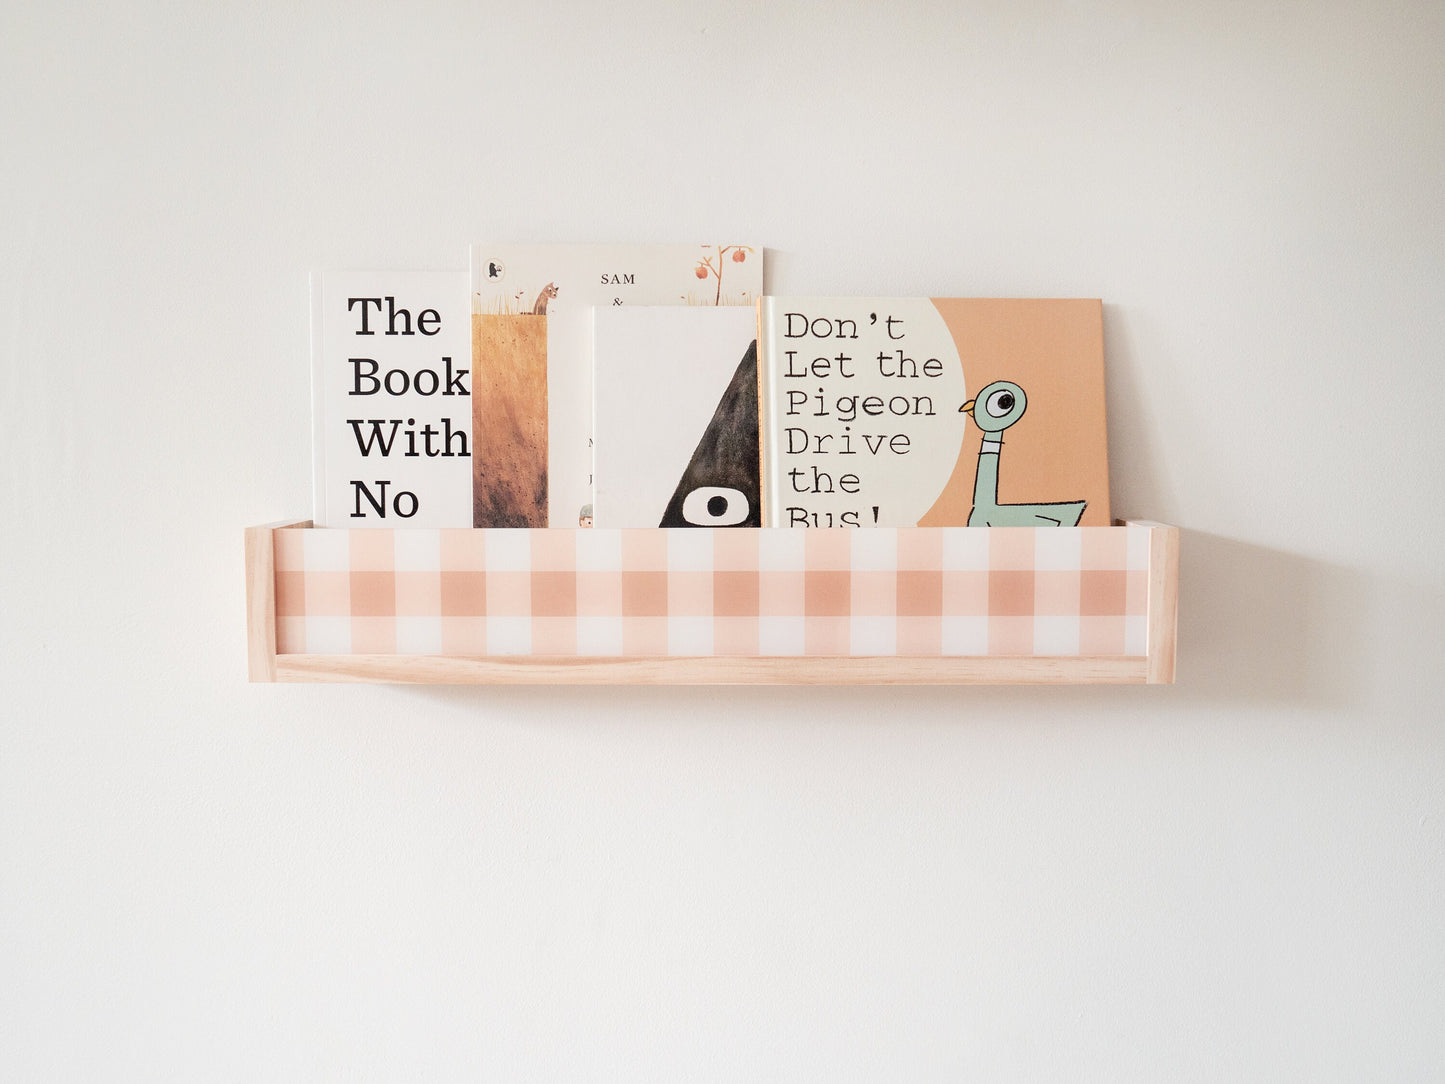 Acrylic Nursery bookshelf (Daisy or Gingham design) - Acrylic Bookshelf, Nursery Shelves, Wall bookshelf for the nursery, Gift for new mum